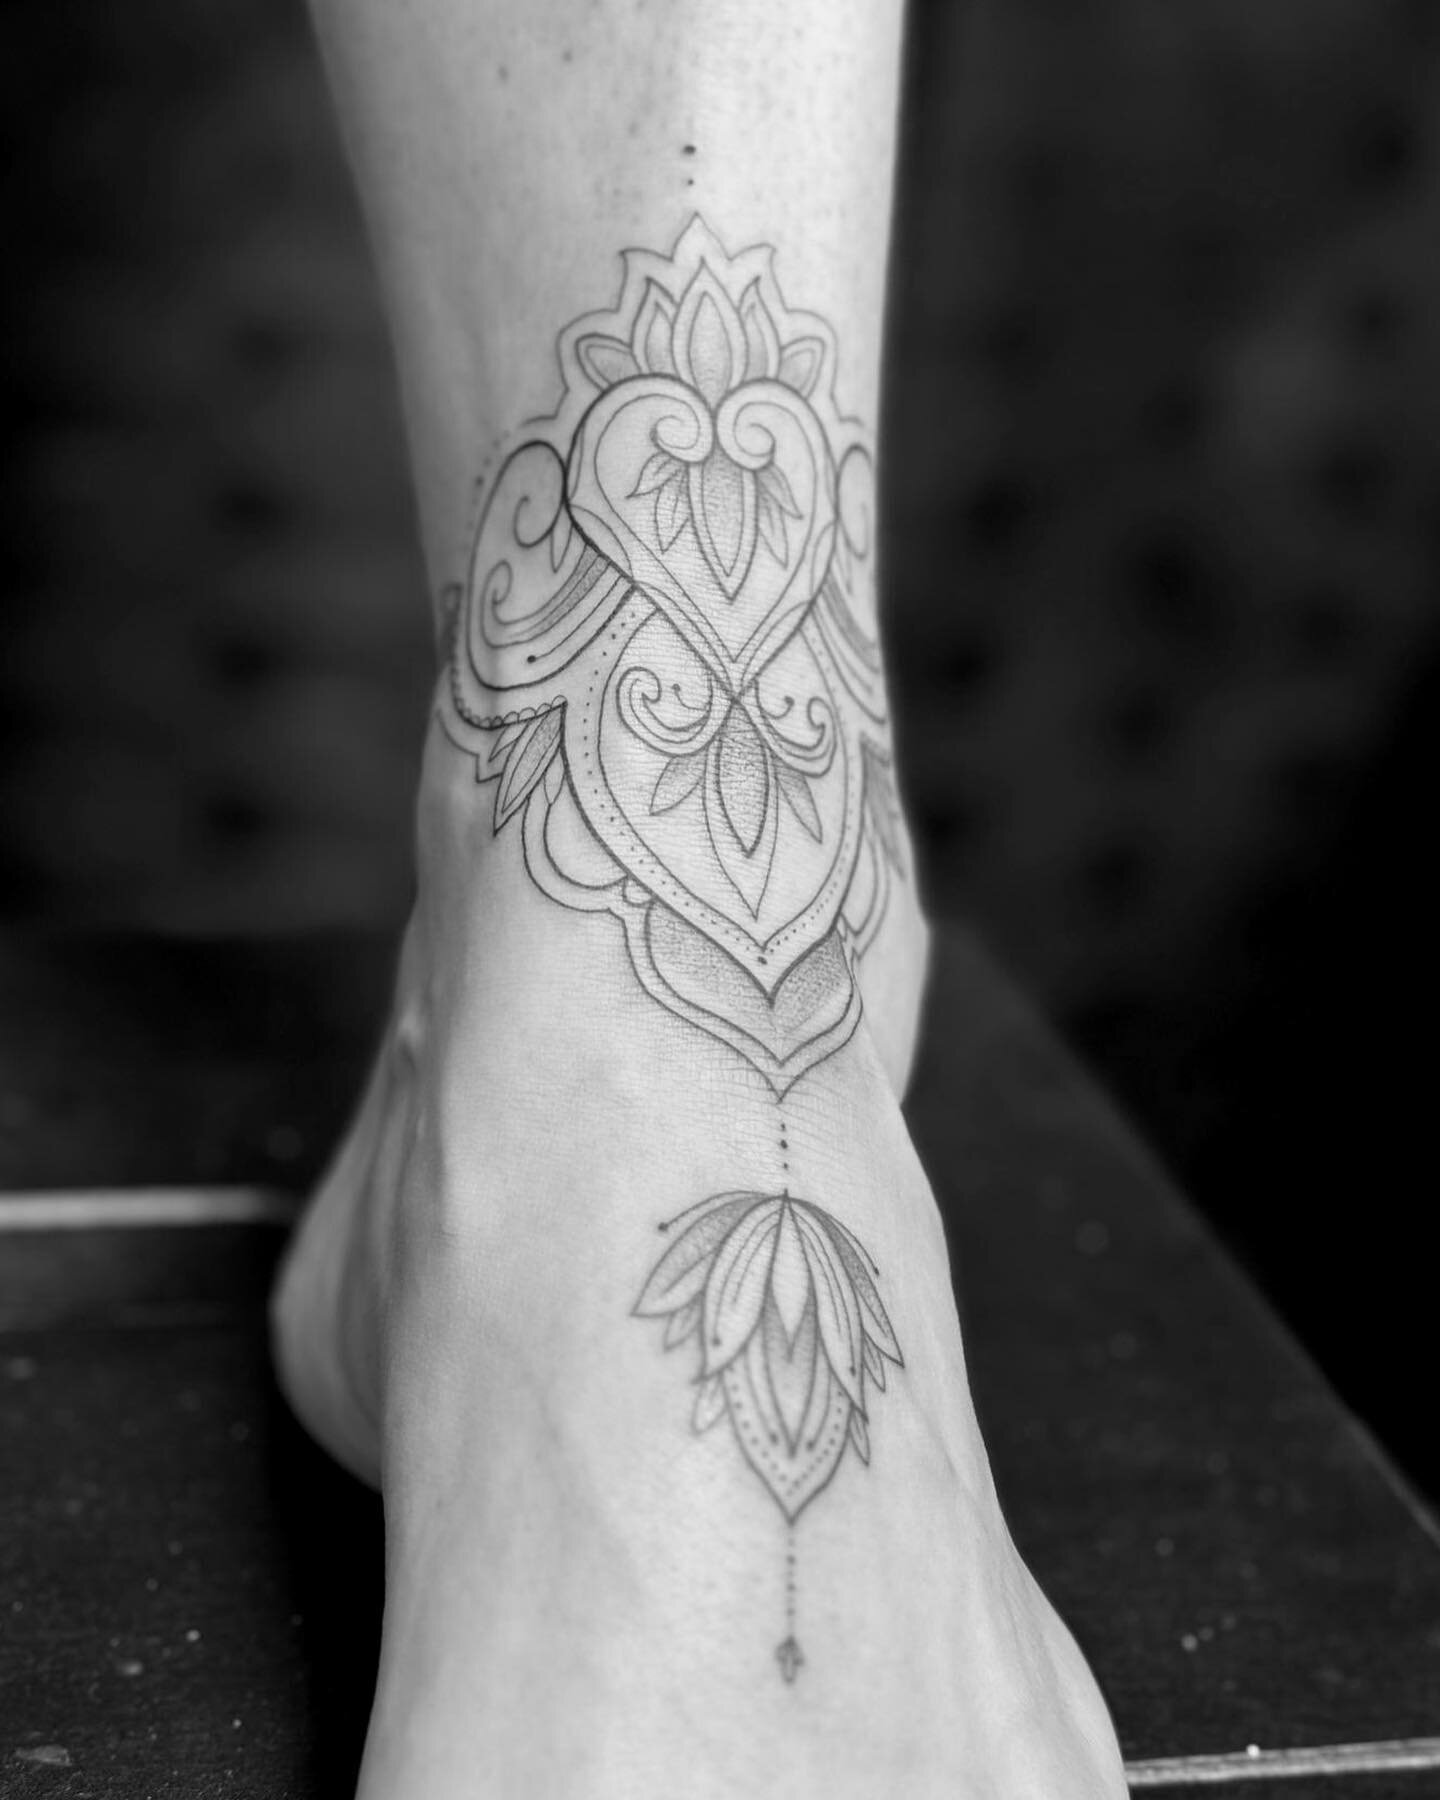 Ornamental Ankle Tattoo for Ruth! 
.
.
.
#ornamentaltattoo #ankletattoo #finelinetattoo #tattooideas #tattooist #tattooartist #tattooed #fineliner